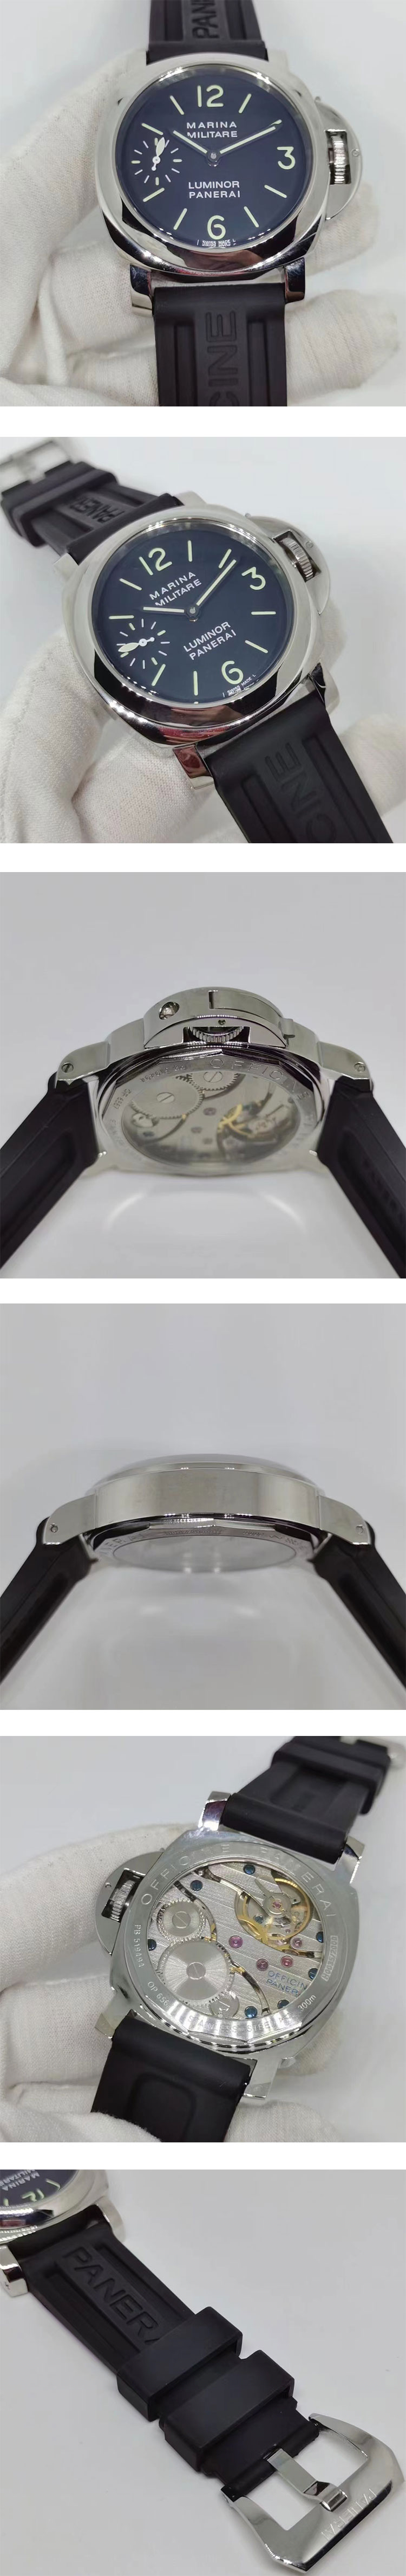 オフィチーネ パネライコピー腕時計相談 ルミノール ミリターレ アメリゴ・ヴェスプッチ PAM00082